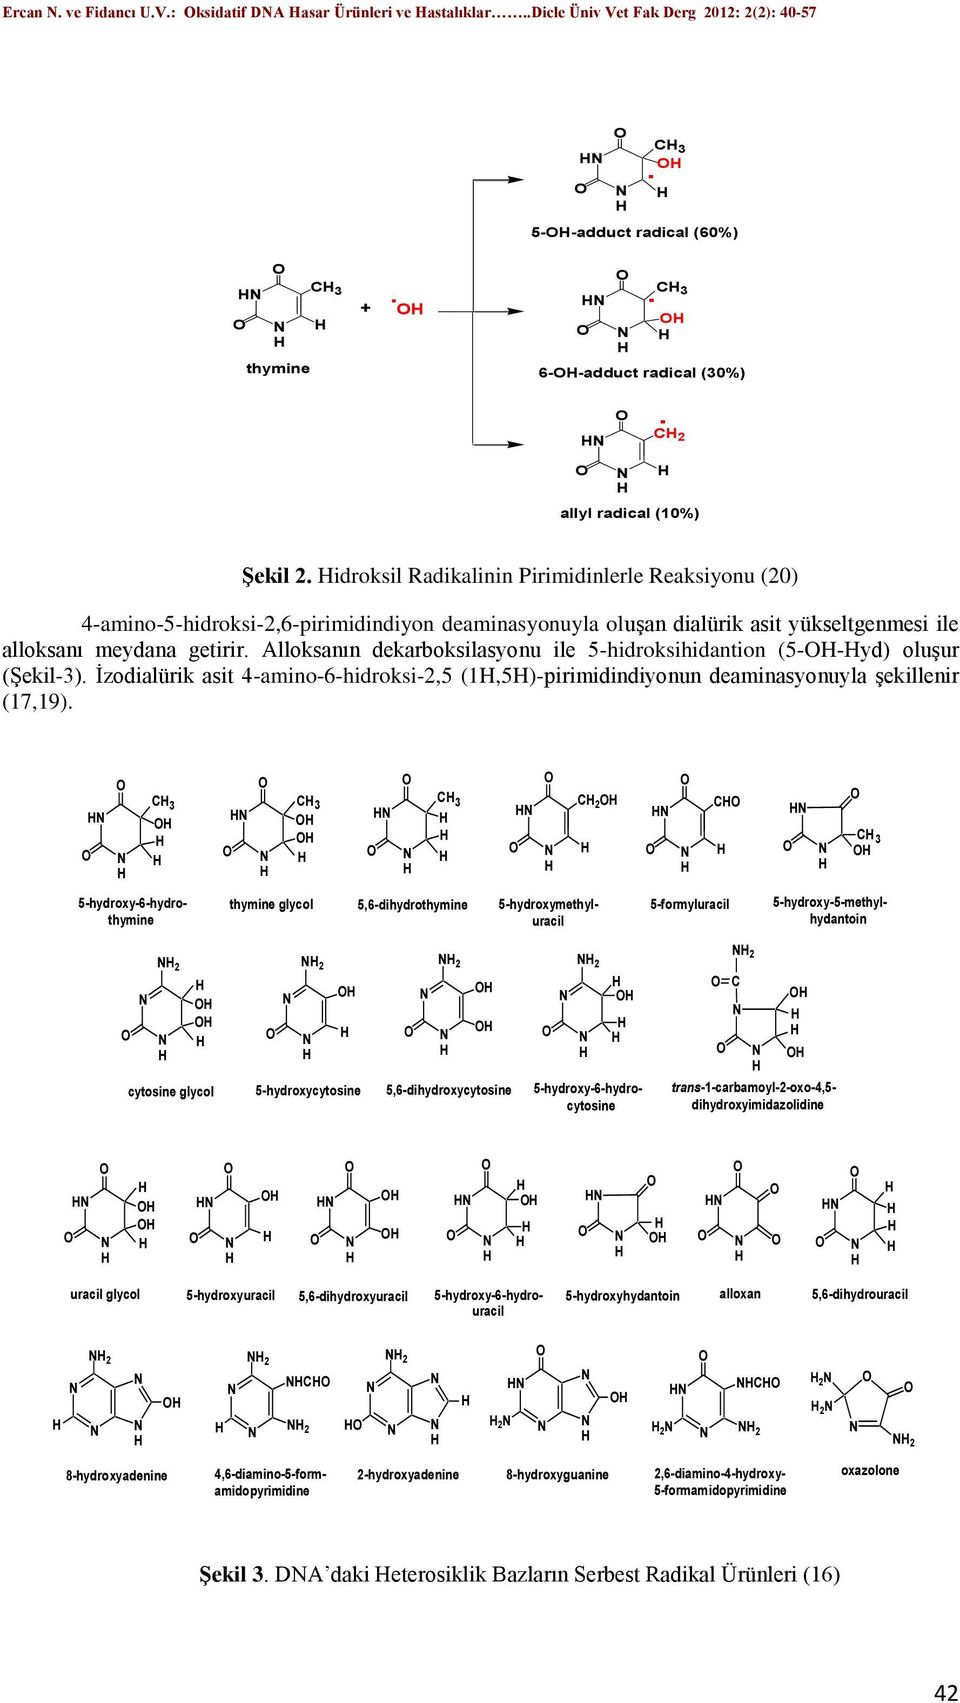 ile alloksanı meydana getirir Alloksanın dekarboksilasyonu ile 5-hidroksihidantion (5--yd) oluşur (Şekil-3) İzodialürik asit 4-amino-6-hidroksi-2,5 (1,5)-pirimidindiyonun deaminasyonuyla şekillenir